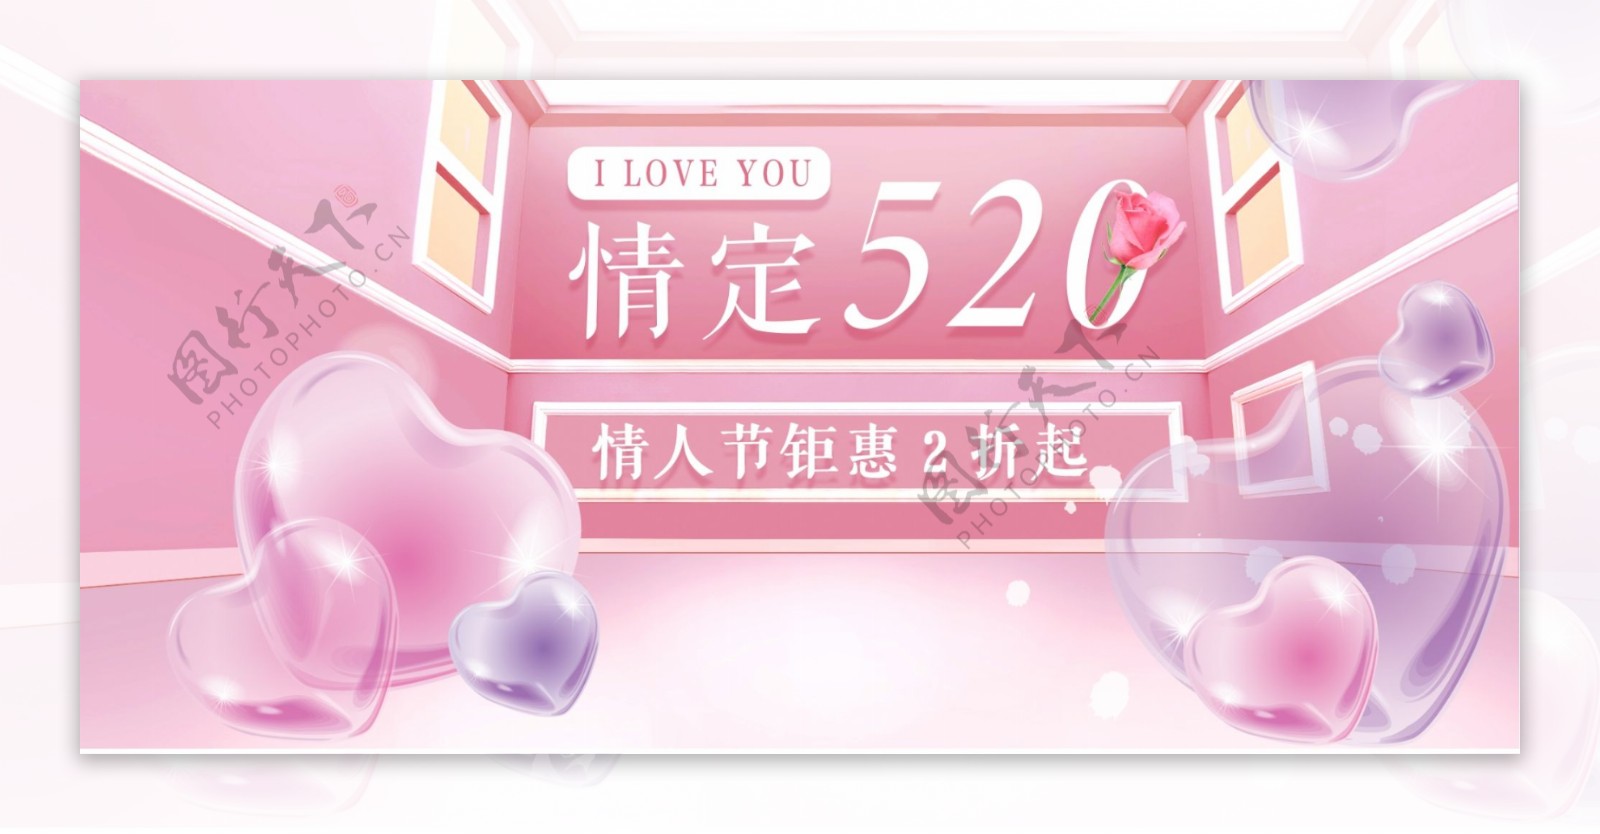 粉色浪漫爱心首饰520表白季电商淘宝海报